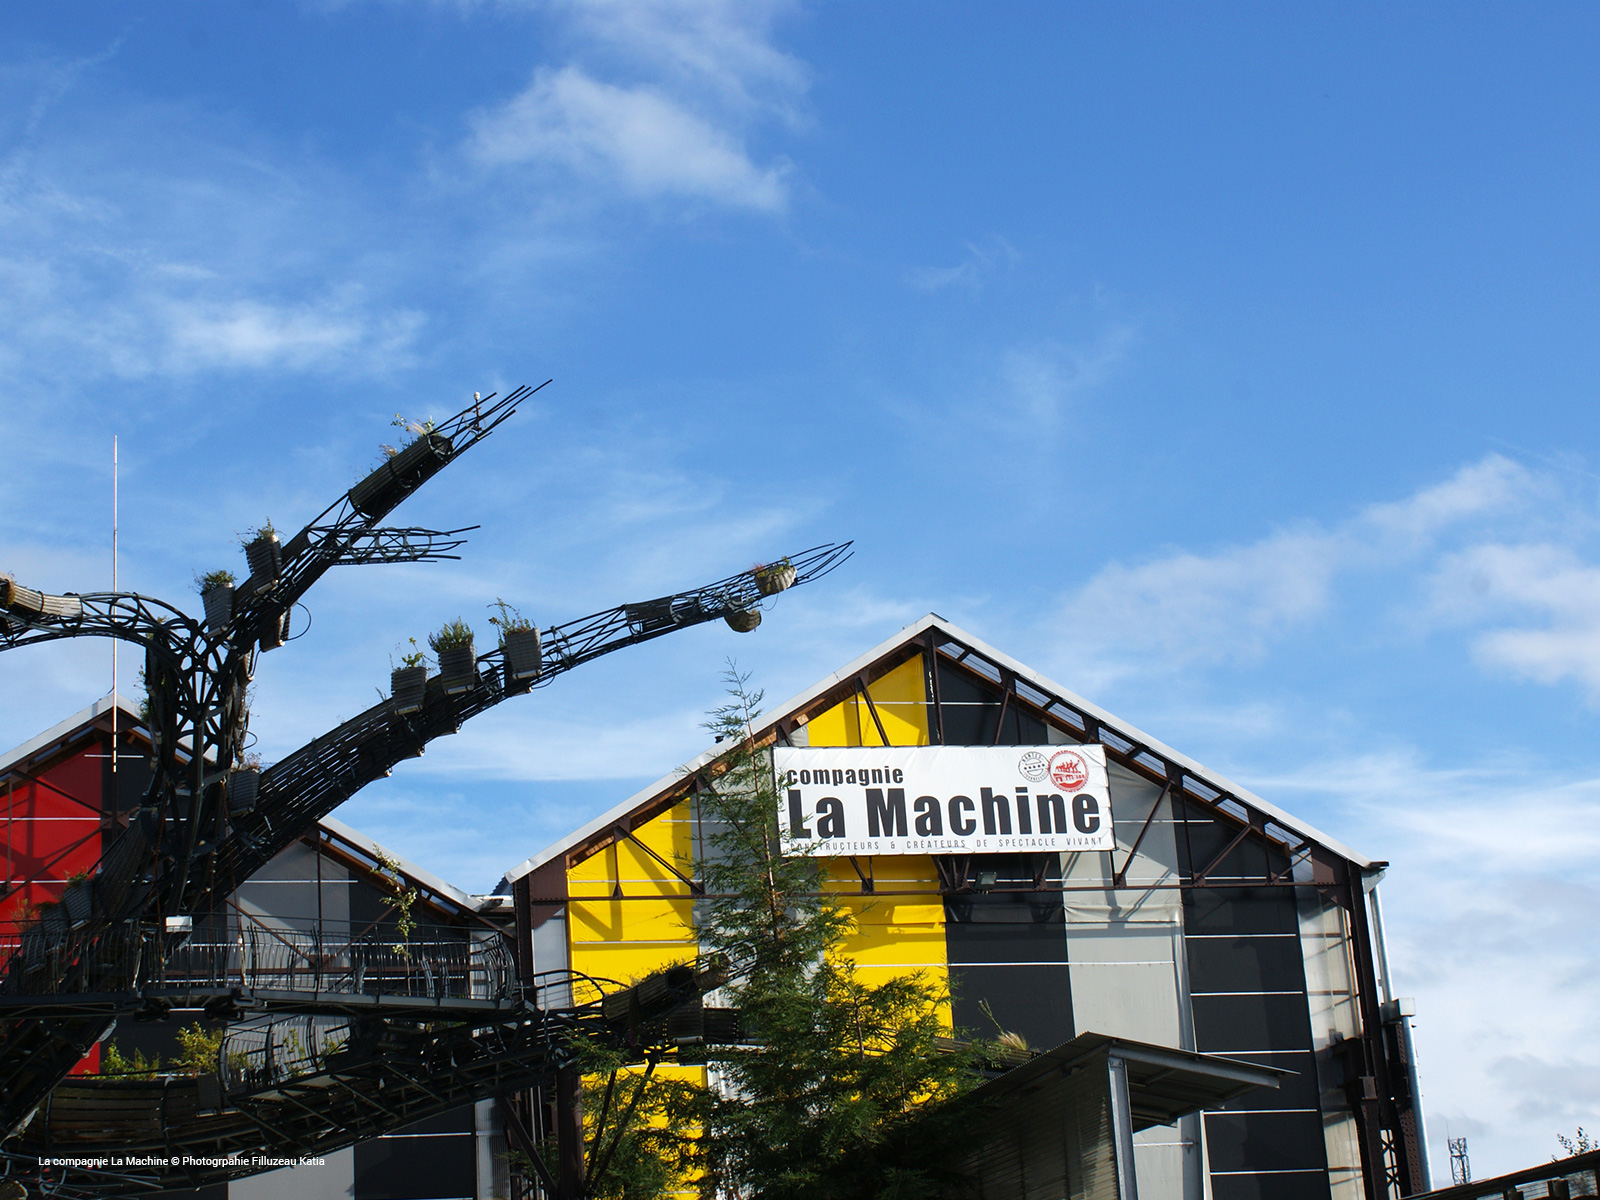 Les Machines de l'Ile de Nantes